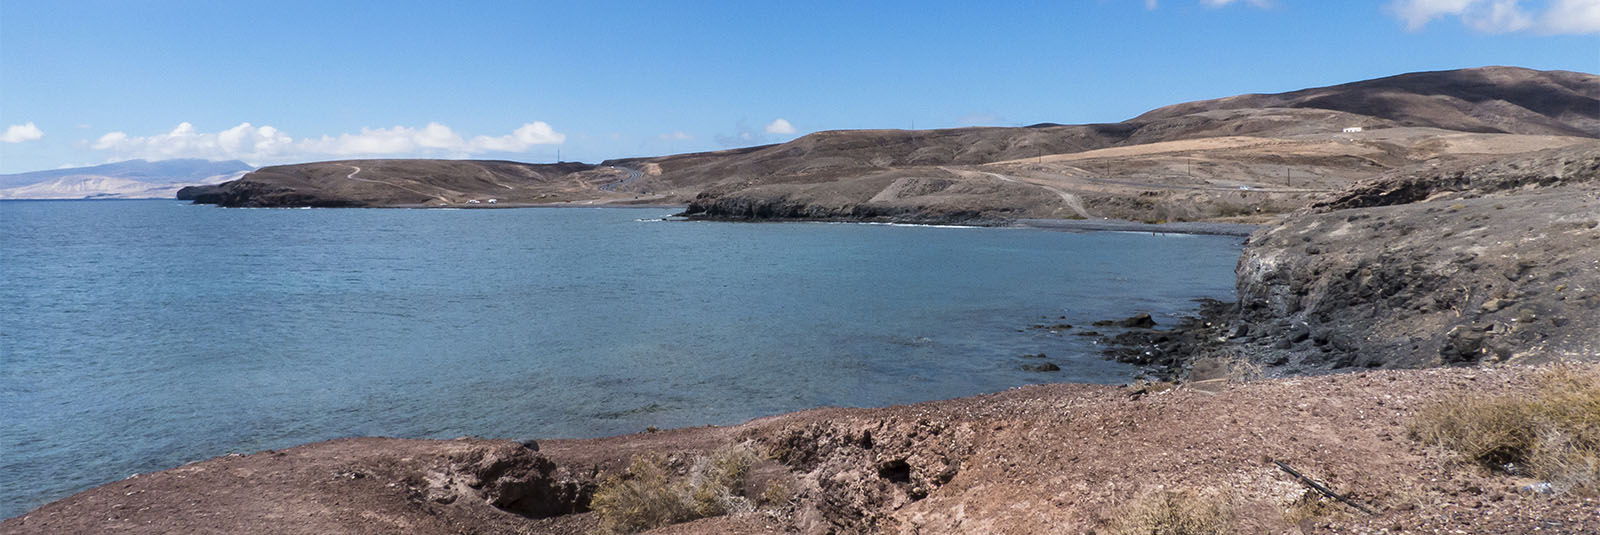 Die Strände Fuerteventuras: Playa laja del Corral - Punta de la Cruzuela.